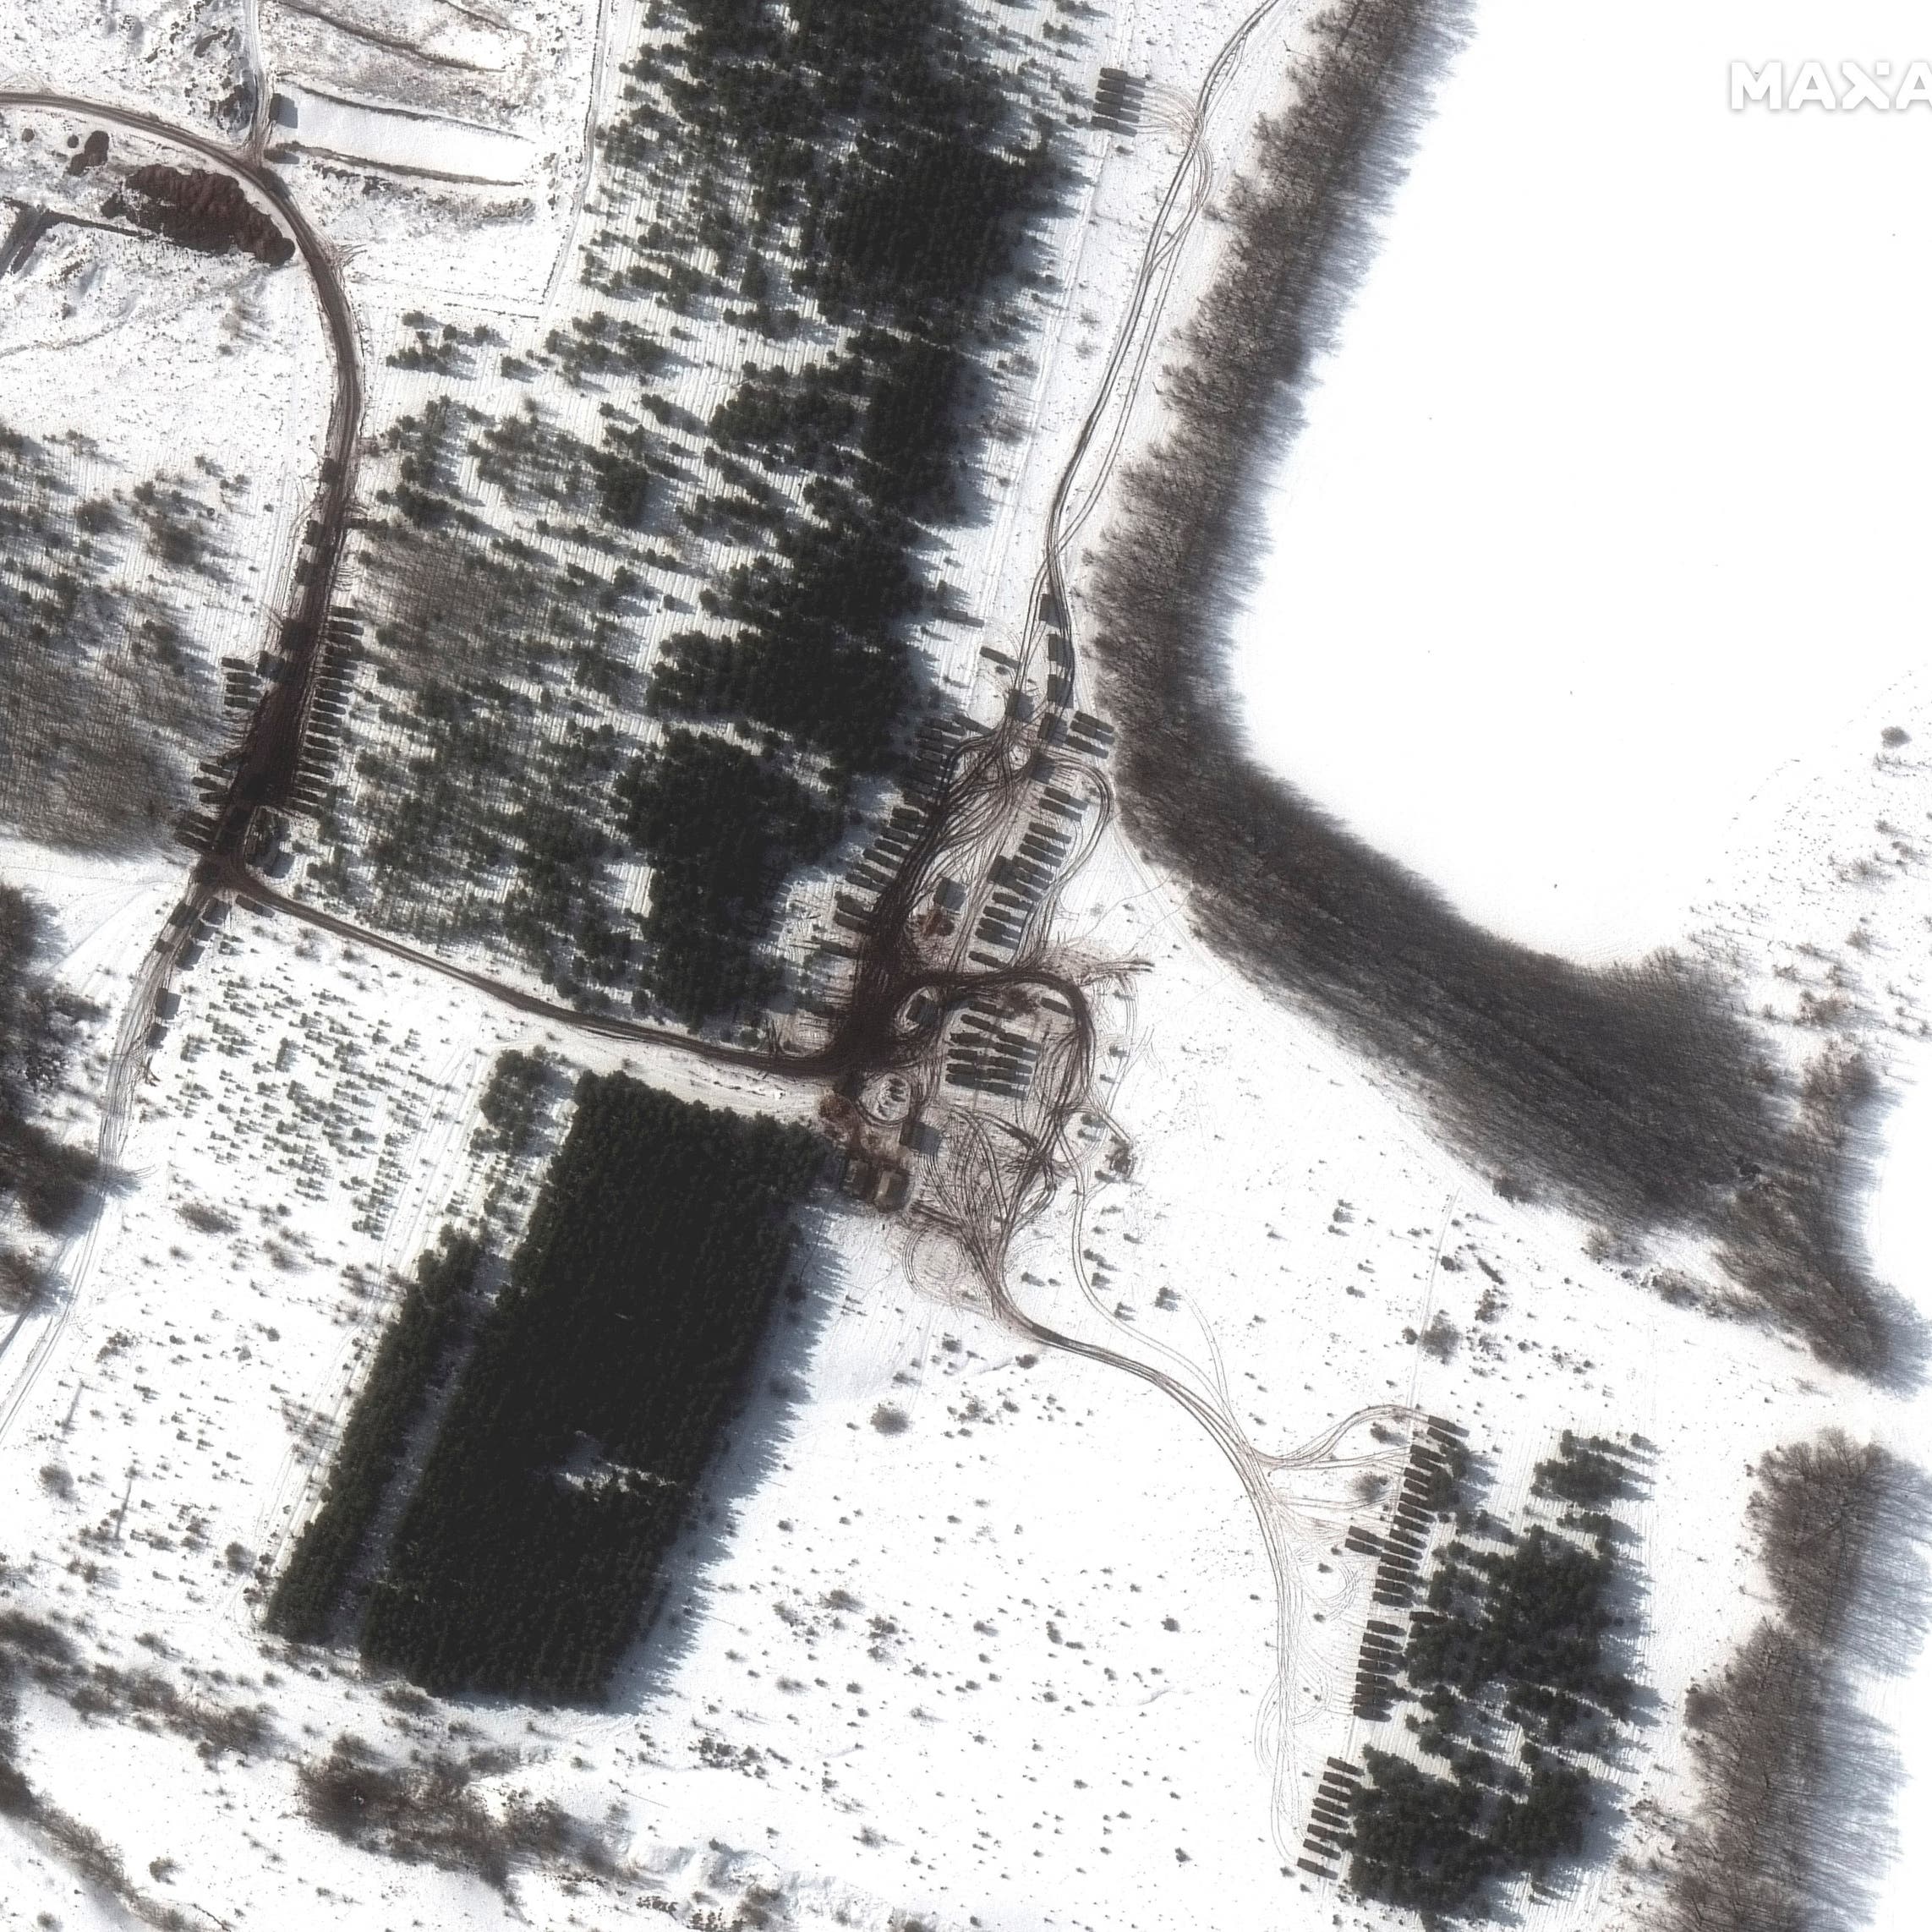 صور أقمار صناعية تظهر انتشاراً جديداً لقوات روسية على حدود أوكرانيا